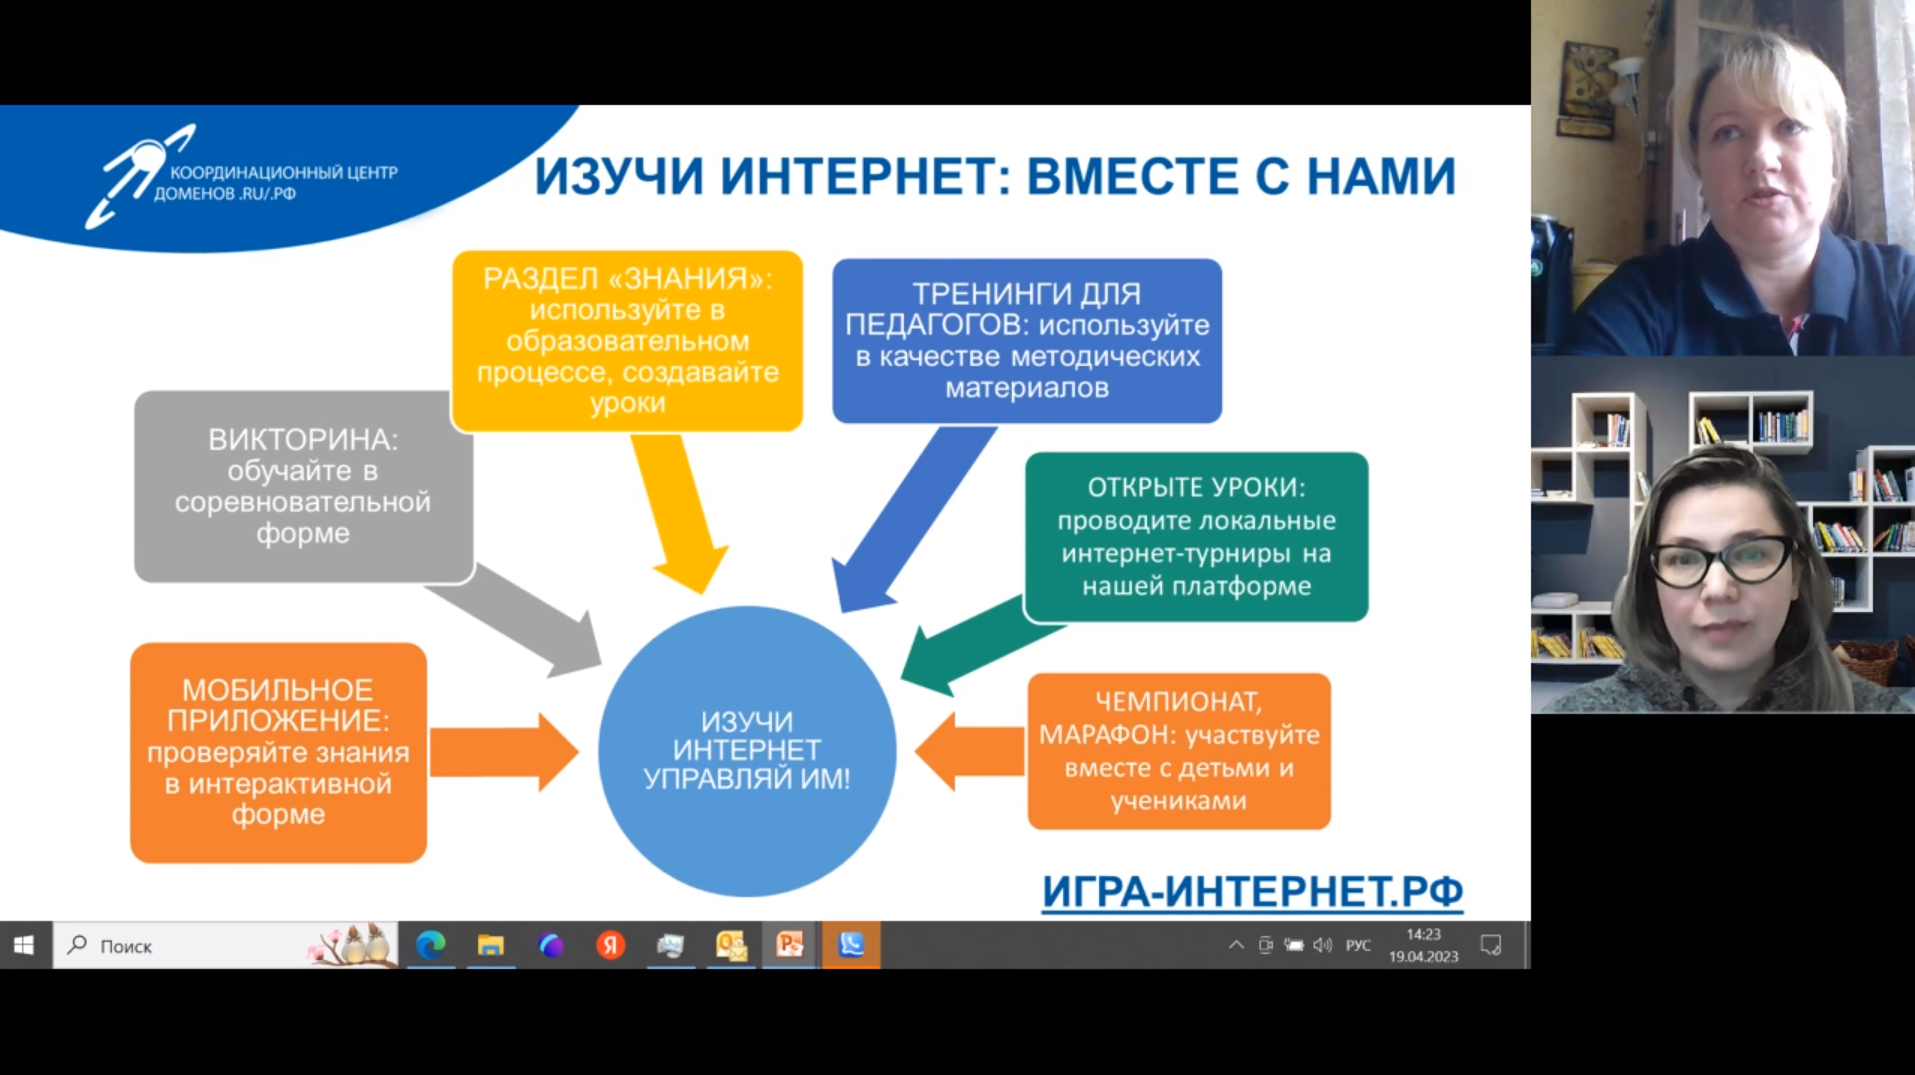 «Изучи интернет» в эфире «ВКонтакте»